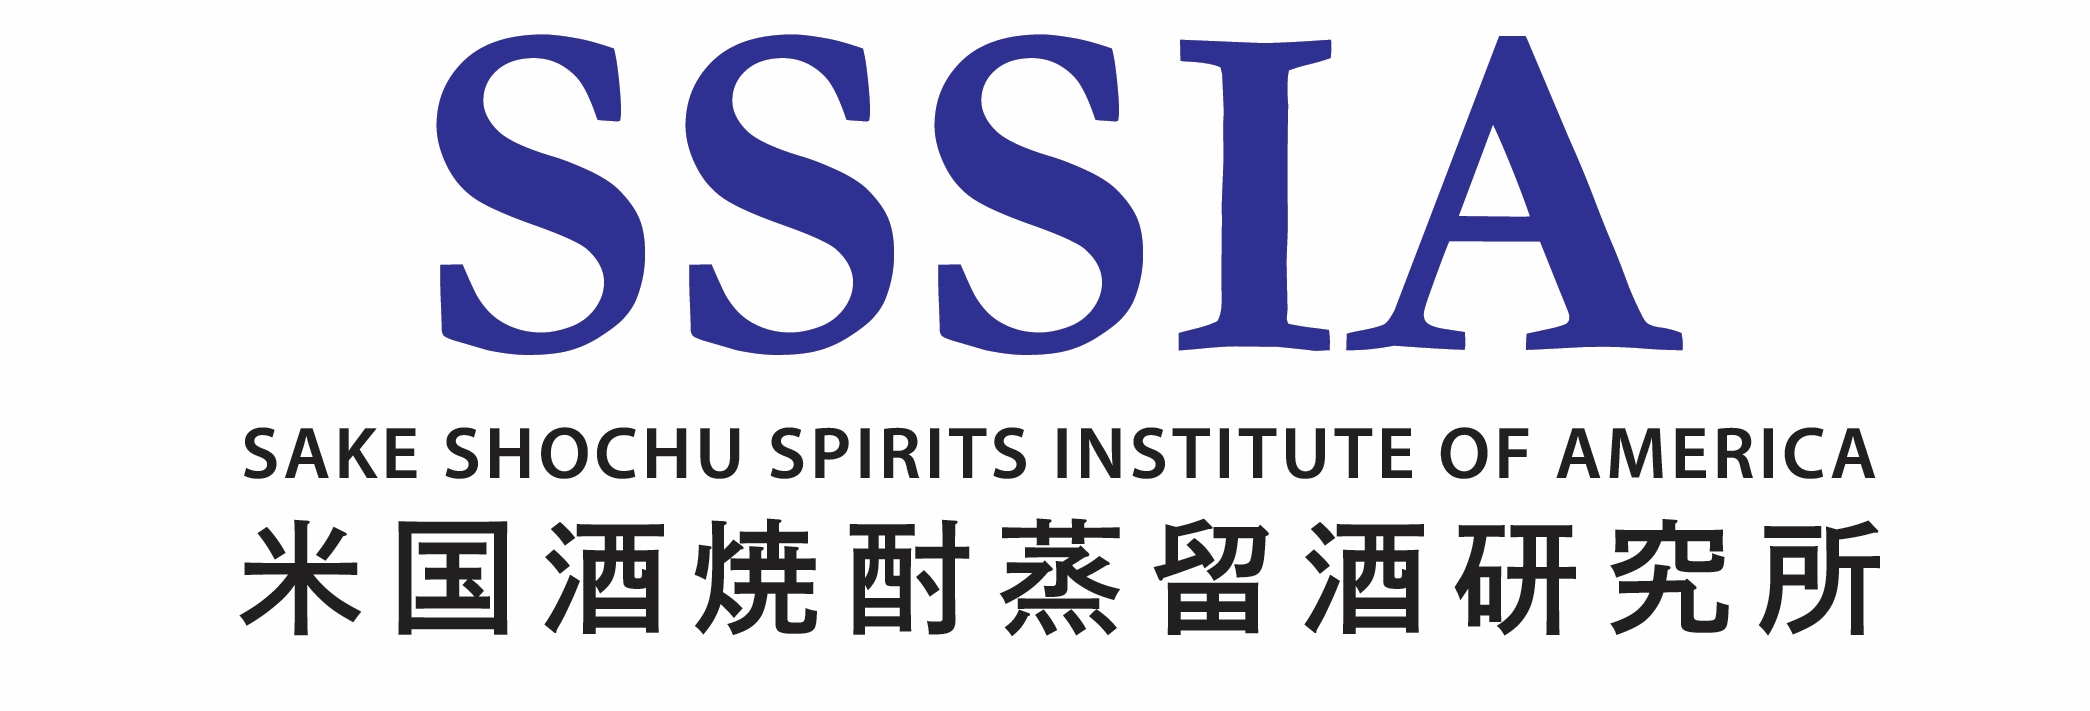 SSSiA-logo3.jpg